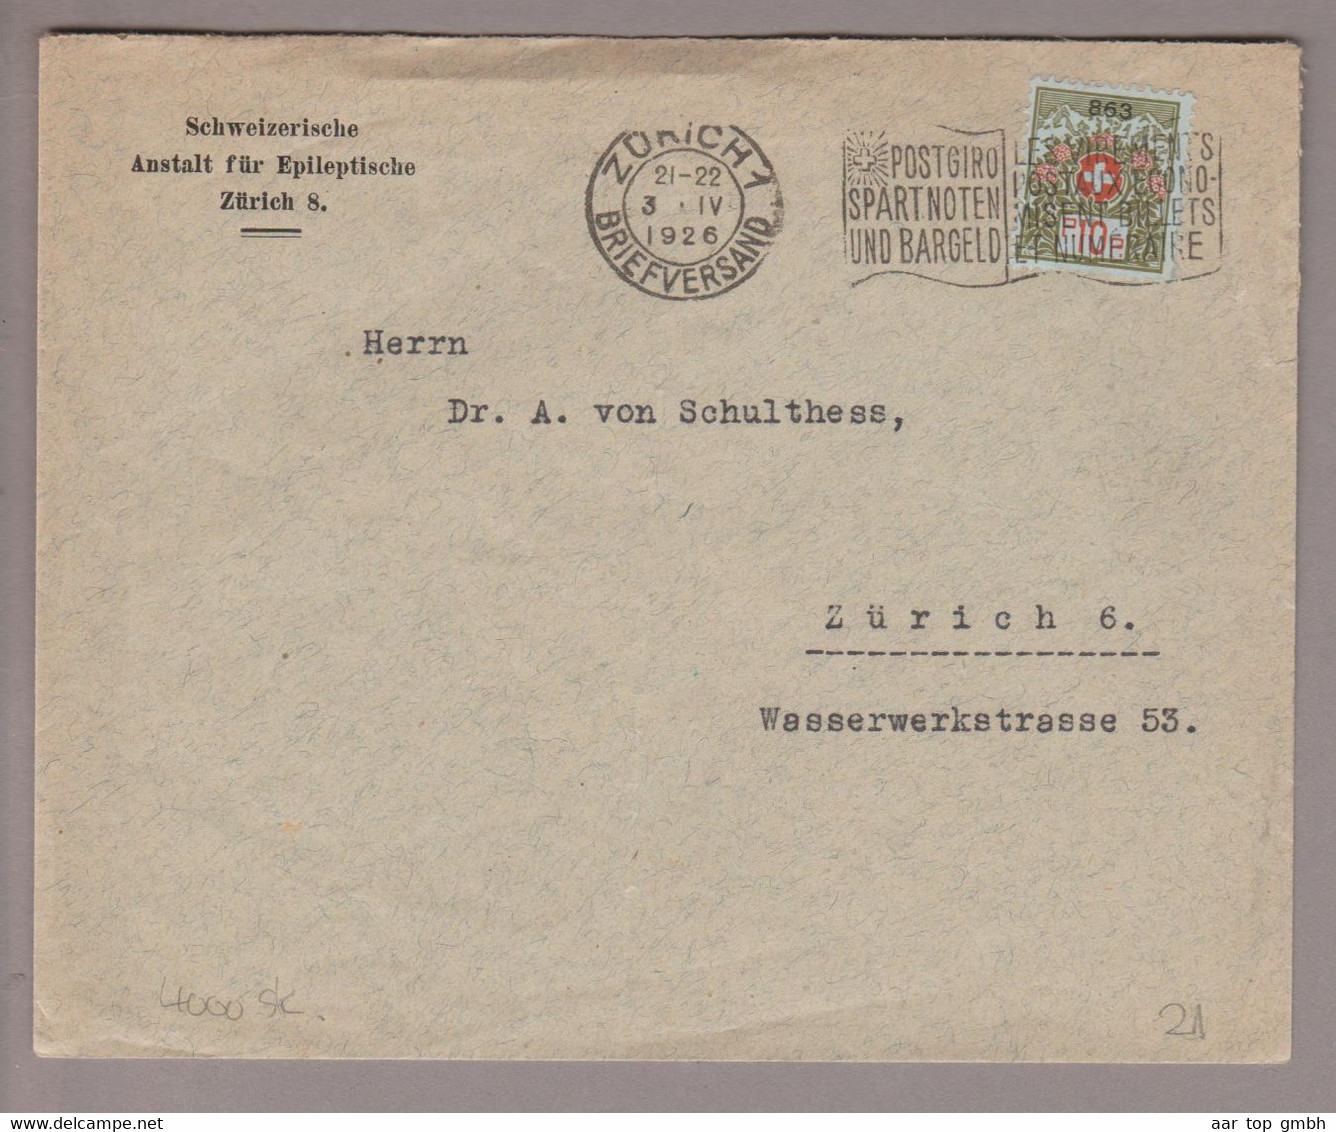 CH Portofreiheit Zu#9 10Rp. GR#863 Brief 1926-04-03 Zürich Schweiz. Anstalt F.Epileptische Zürich8 - Vrijstelling Van Portkosten